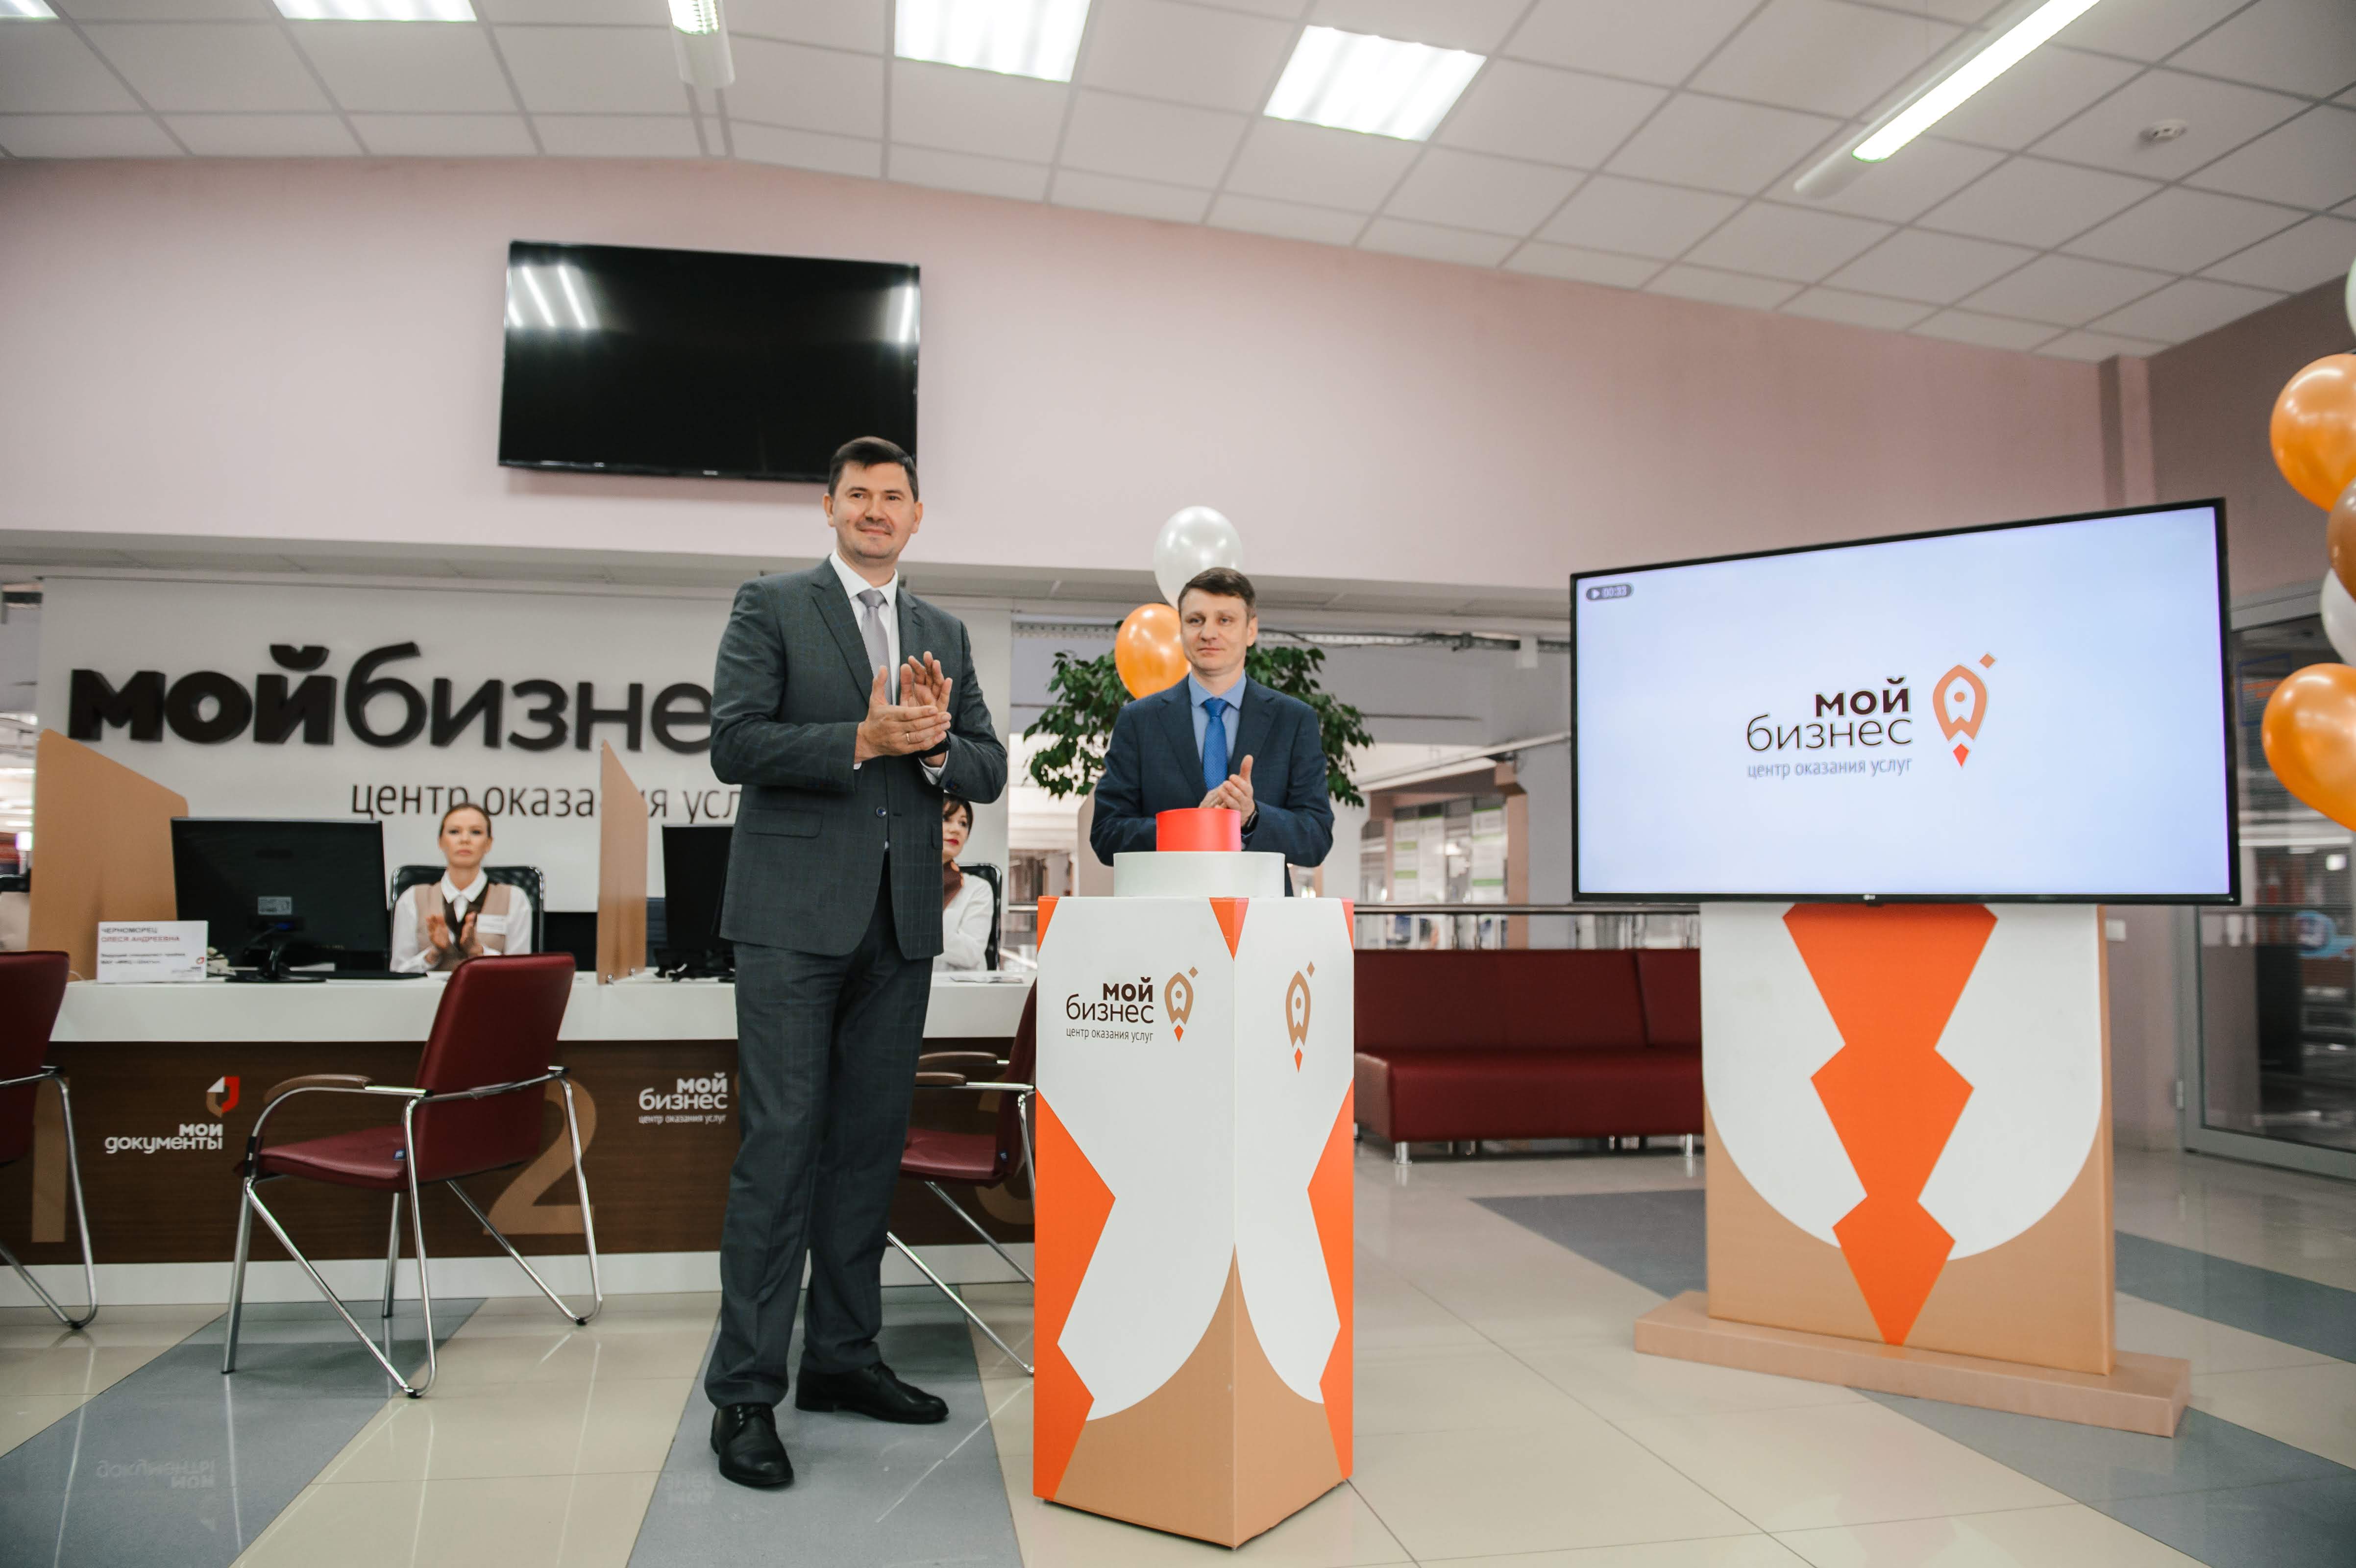 В Ростовской области открылся первый центр оказания услуг и поддержки предпринимателей «Мой бизнес»